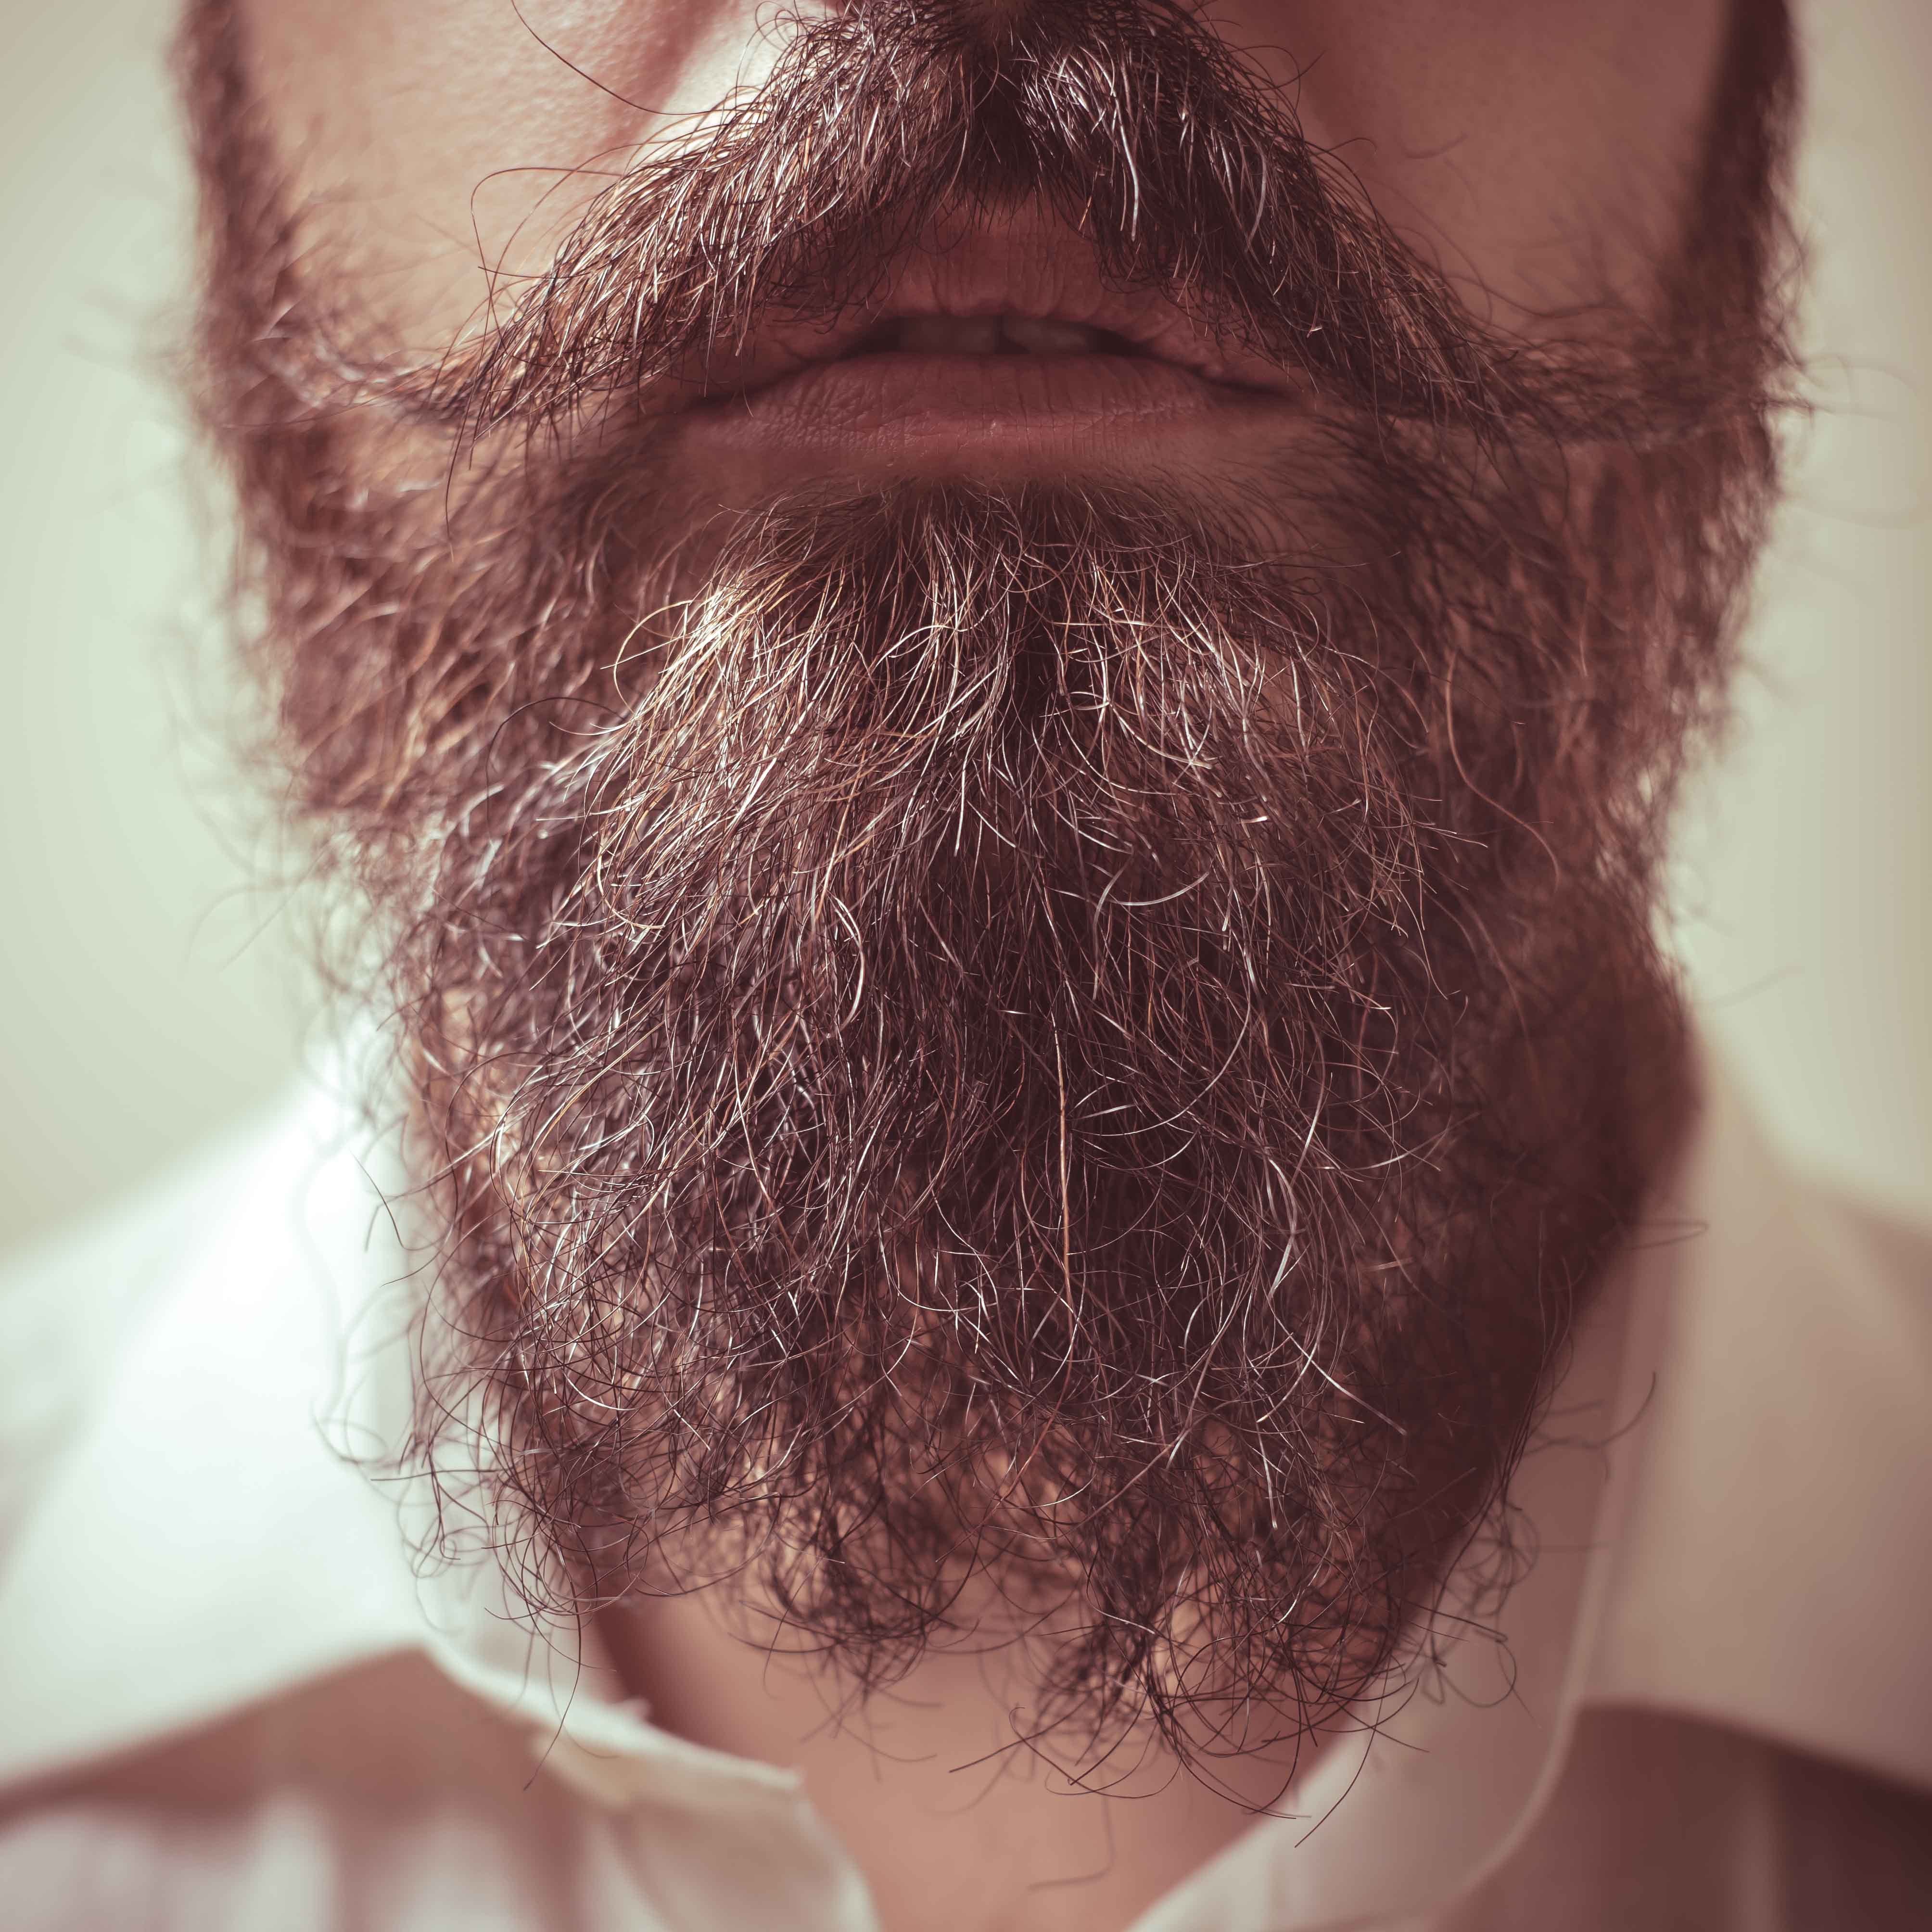 Une barbe de près | Source : Shutterstock